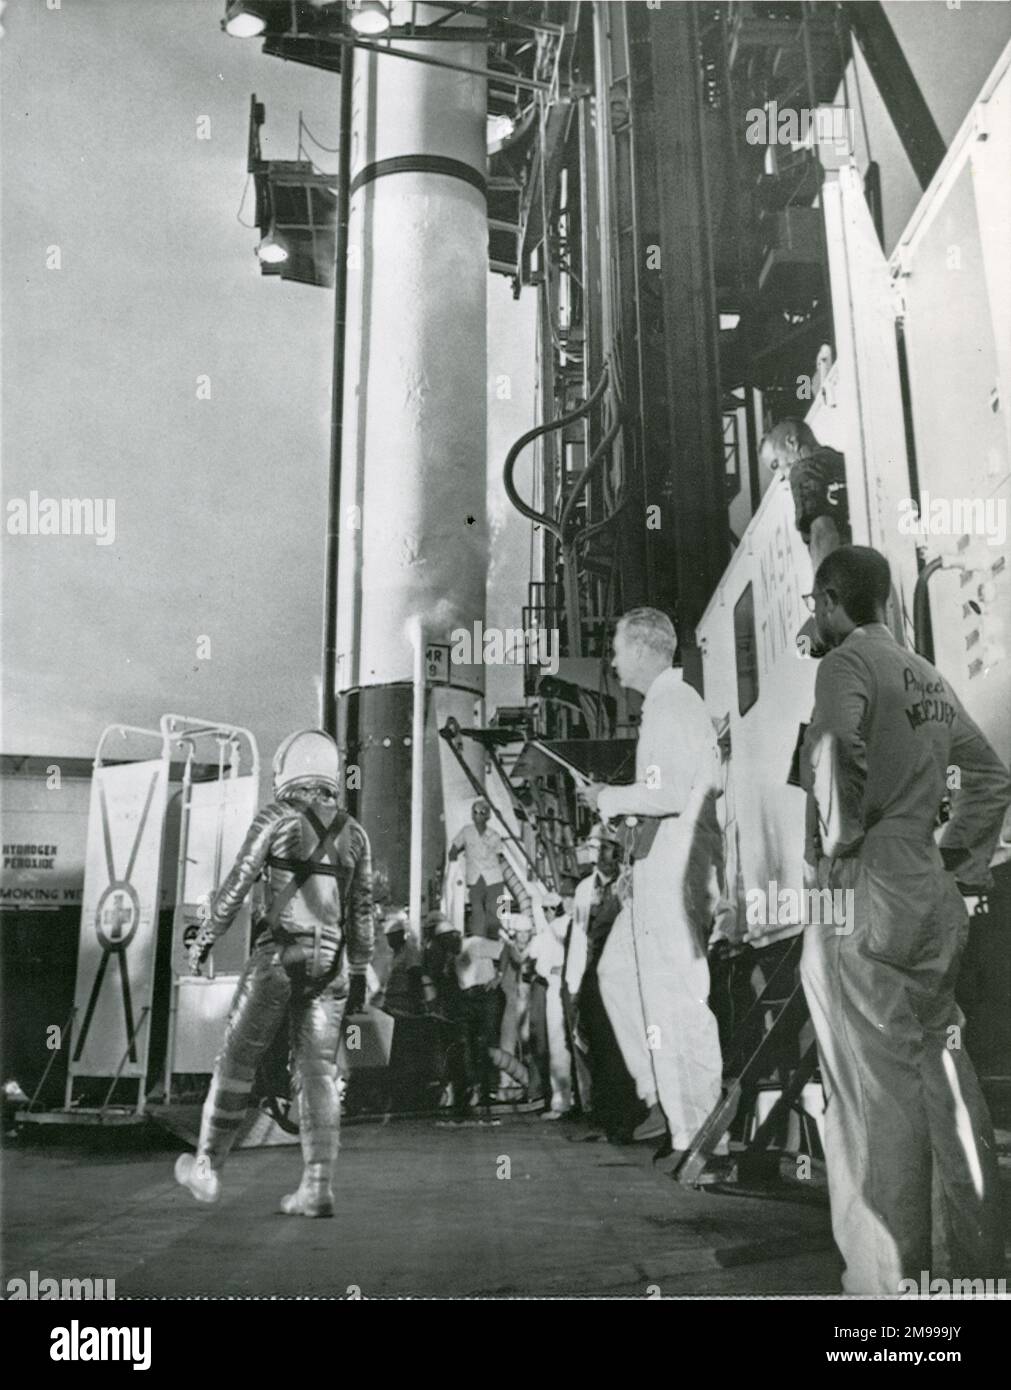 Astronauta Virgil?Gus? Grissom si avvicina al suo razzo Redstone a Cape Canaveral prima del suo volo ritardato che è stato cancellato a causa del maltempo, 19 luglio 1961. Foto Stock